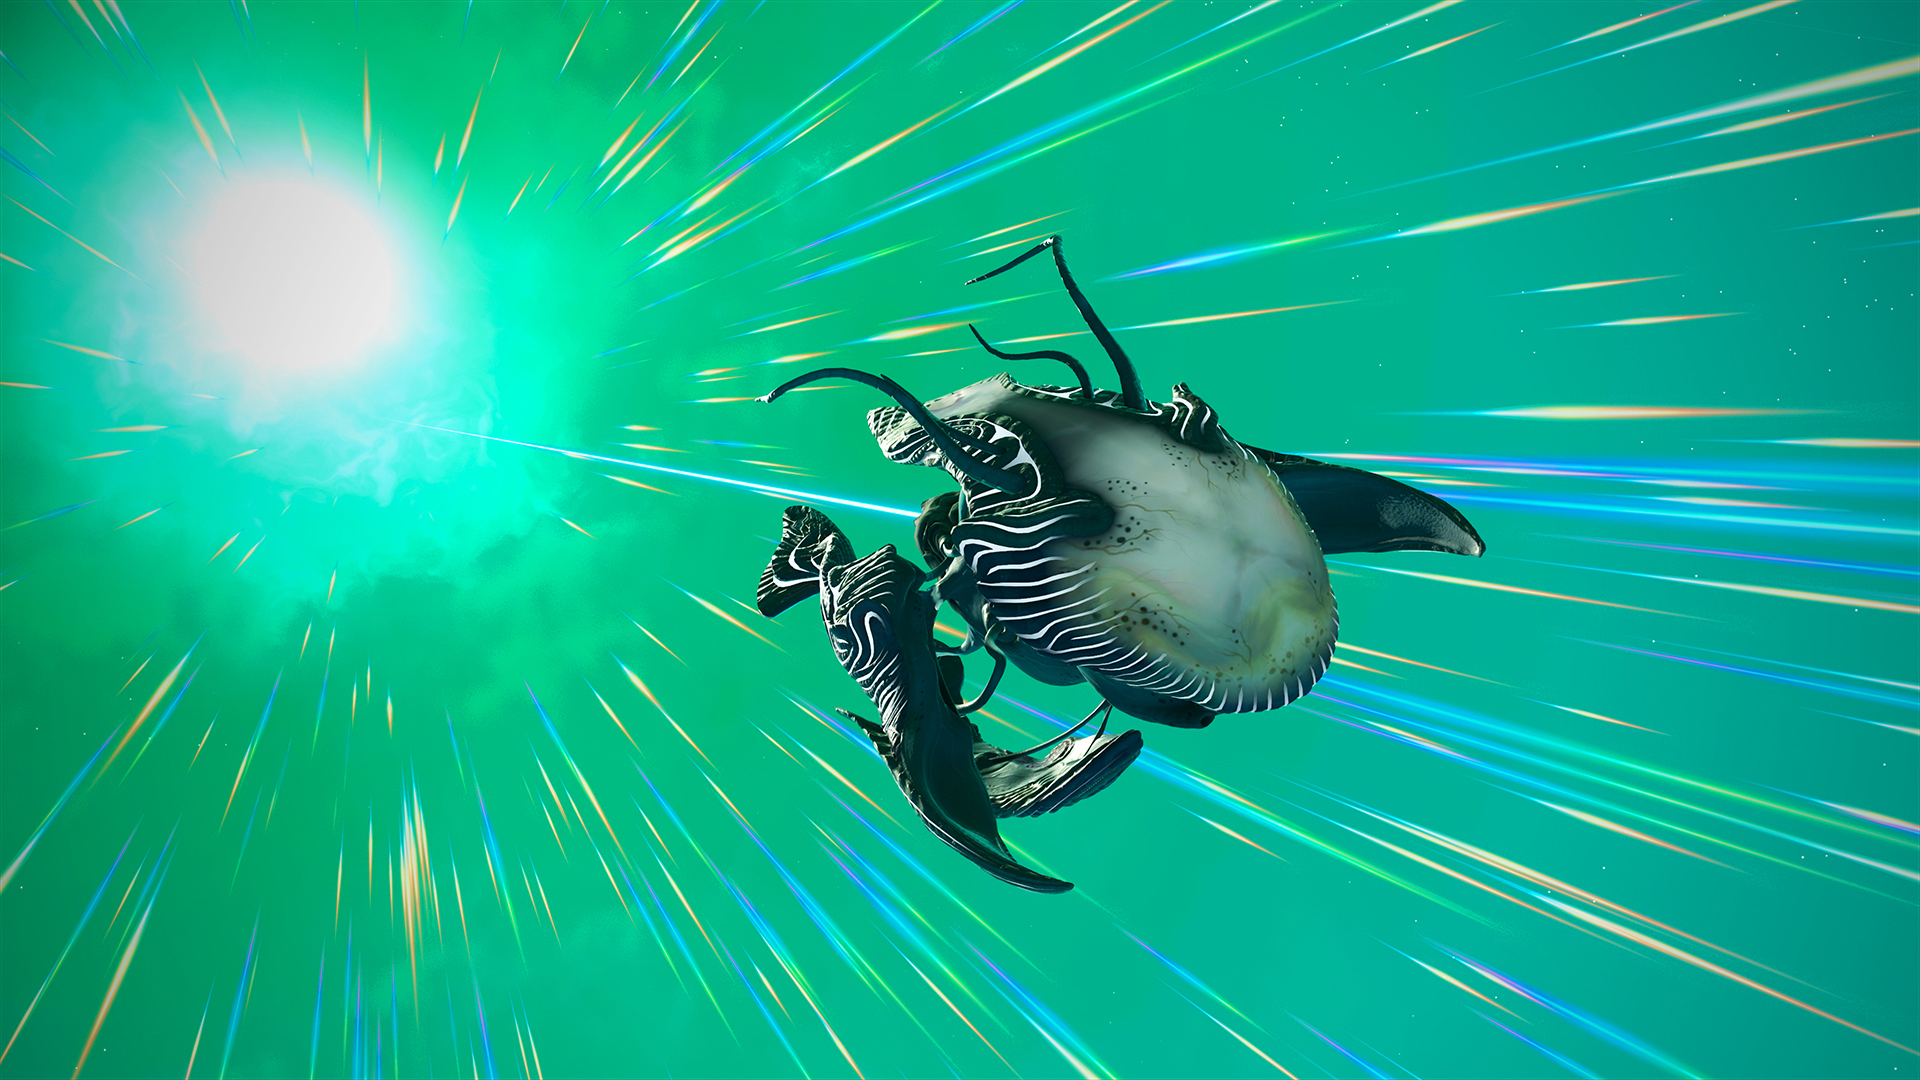 《无人深空》“生物飞船”预告片 稀奇古怪很有趣